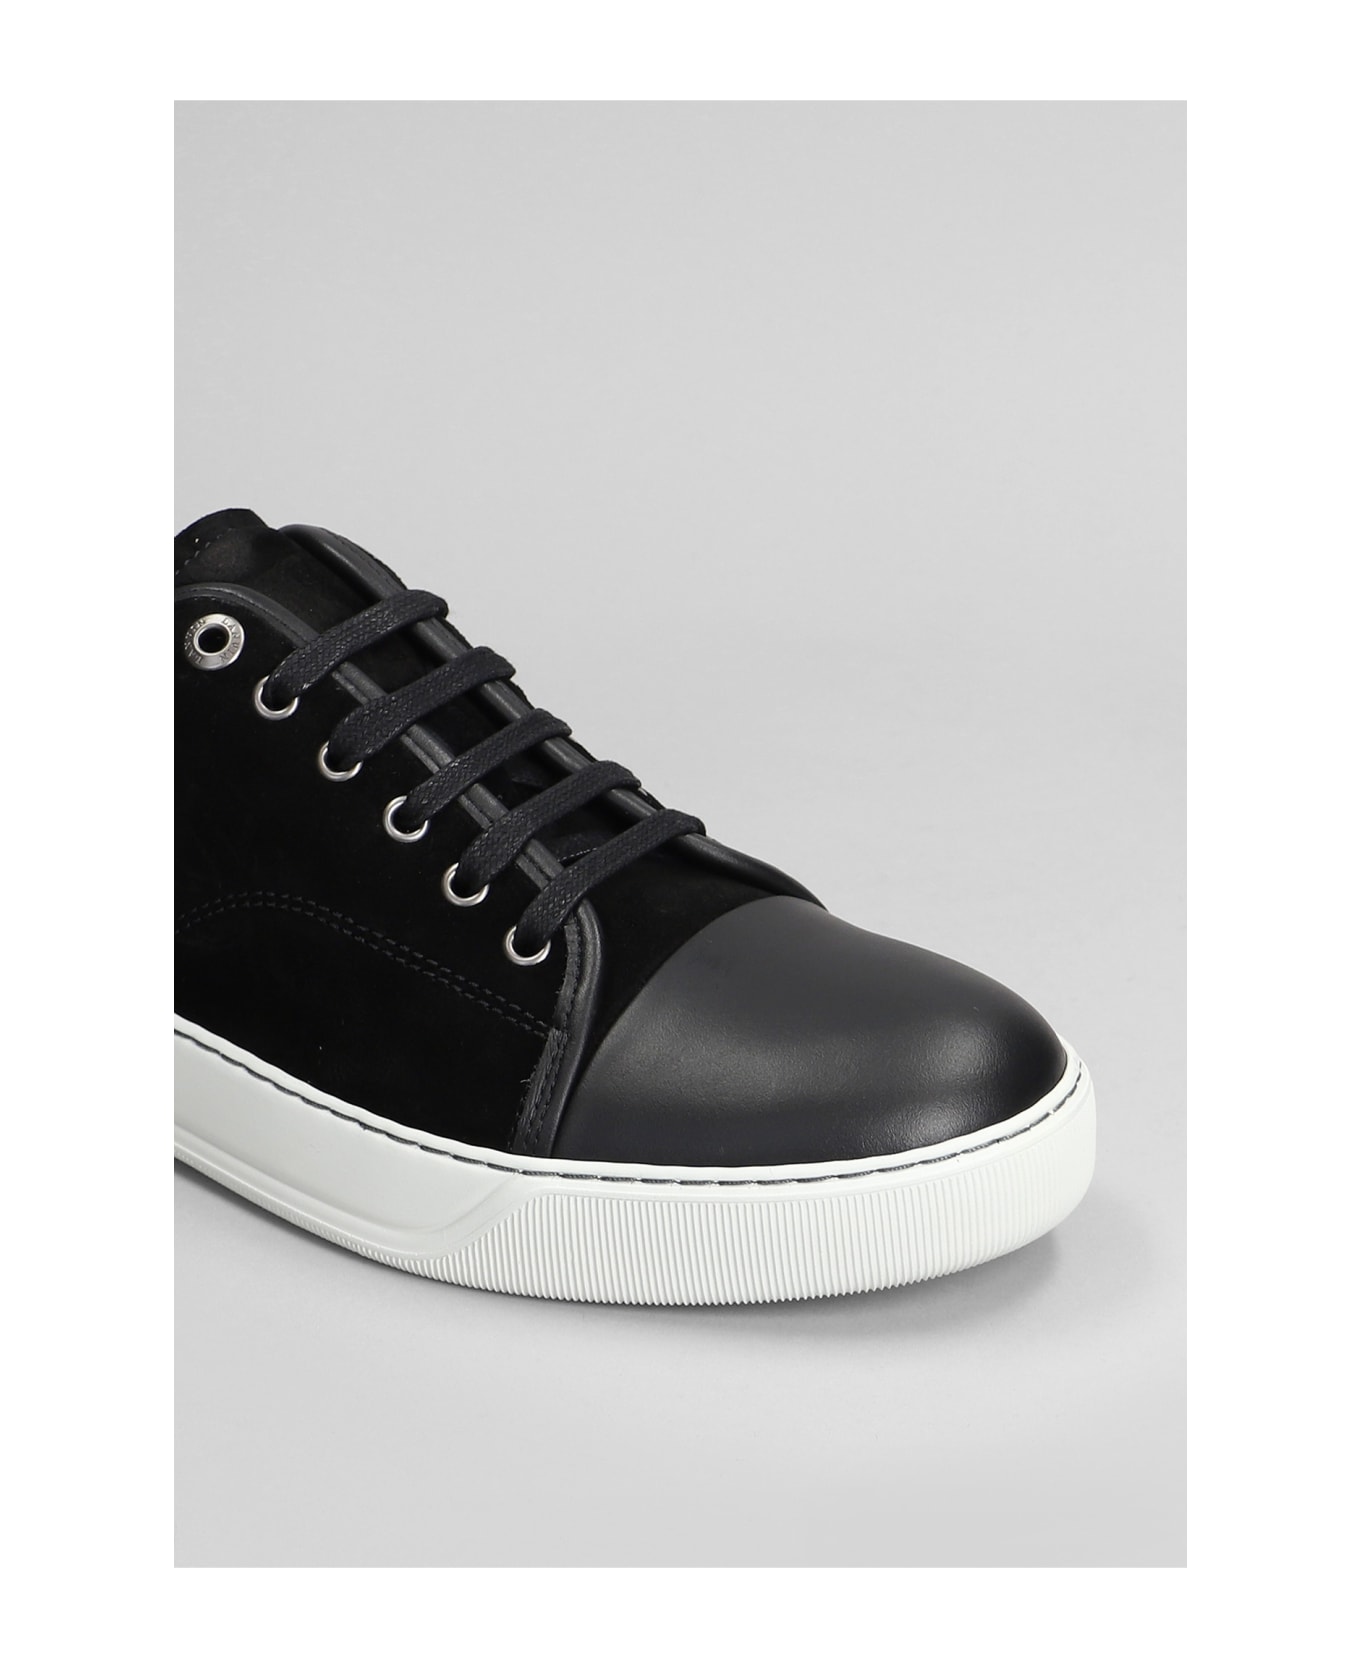 Lanvin Dbb1 Sneakers In Black Suede - black